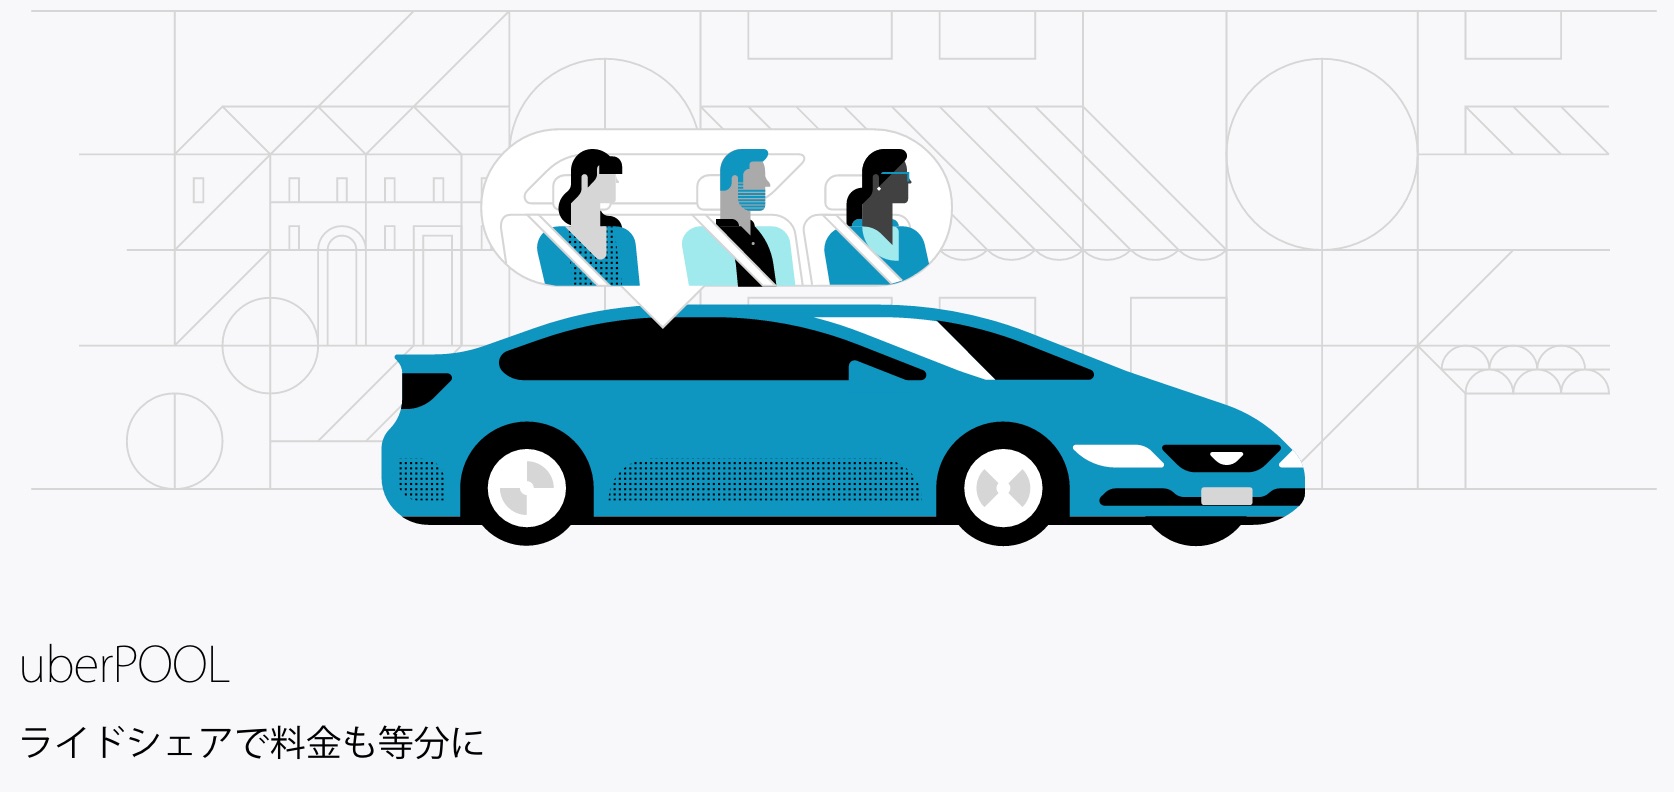 Uber タクシー それとも Uber ドライバーとして または乗客としてニューヨークで Uber を活用しましょう